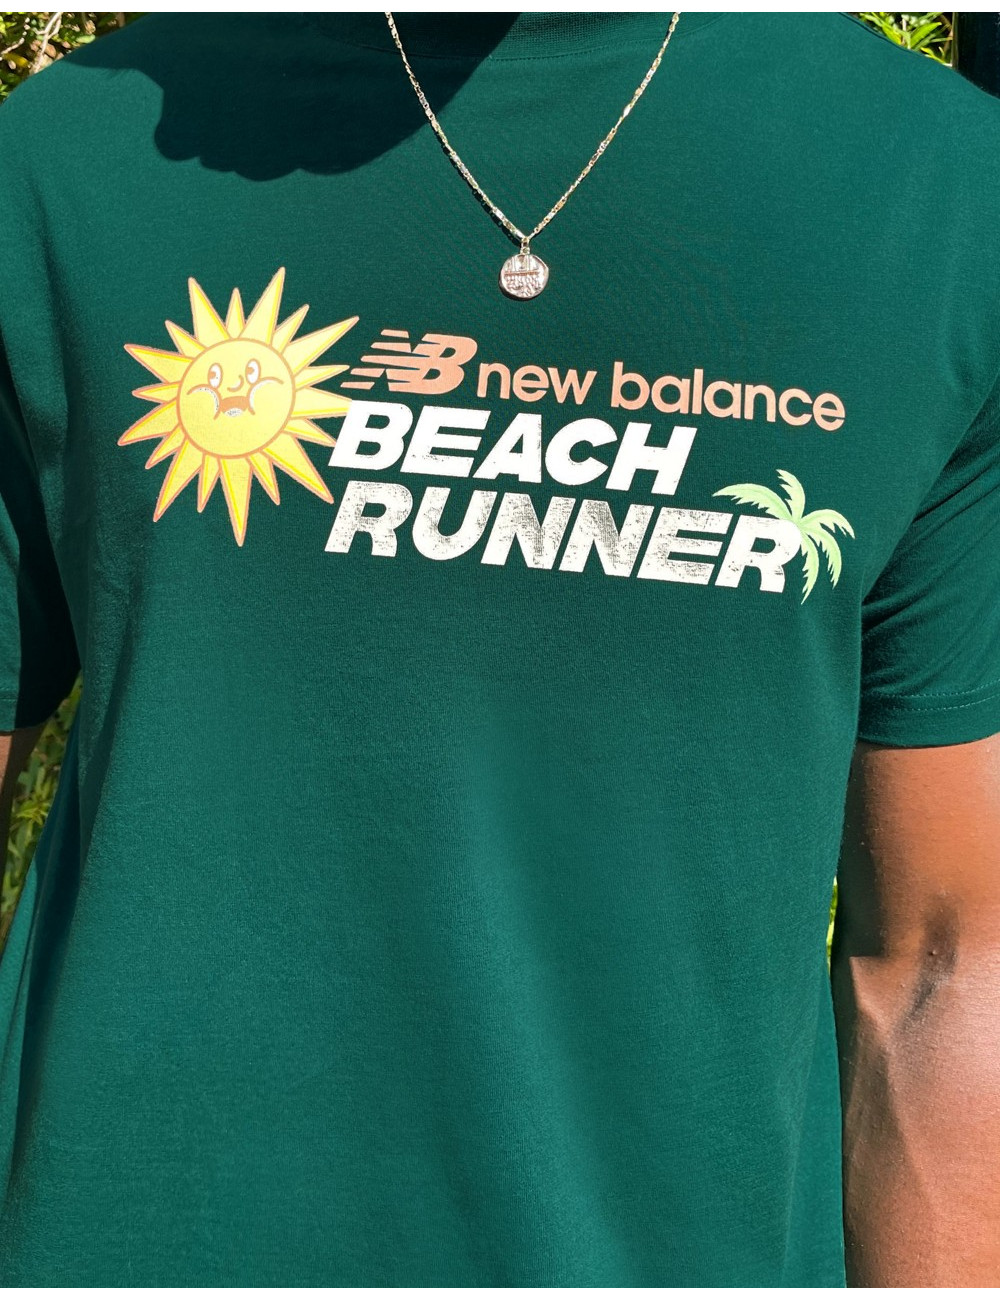 New Balance Beach runner...